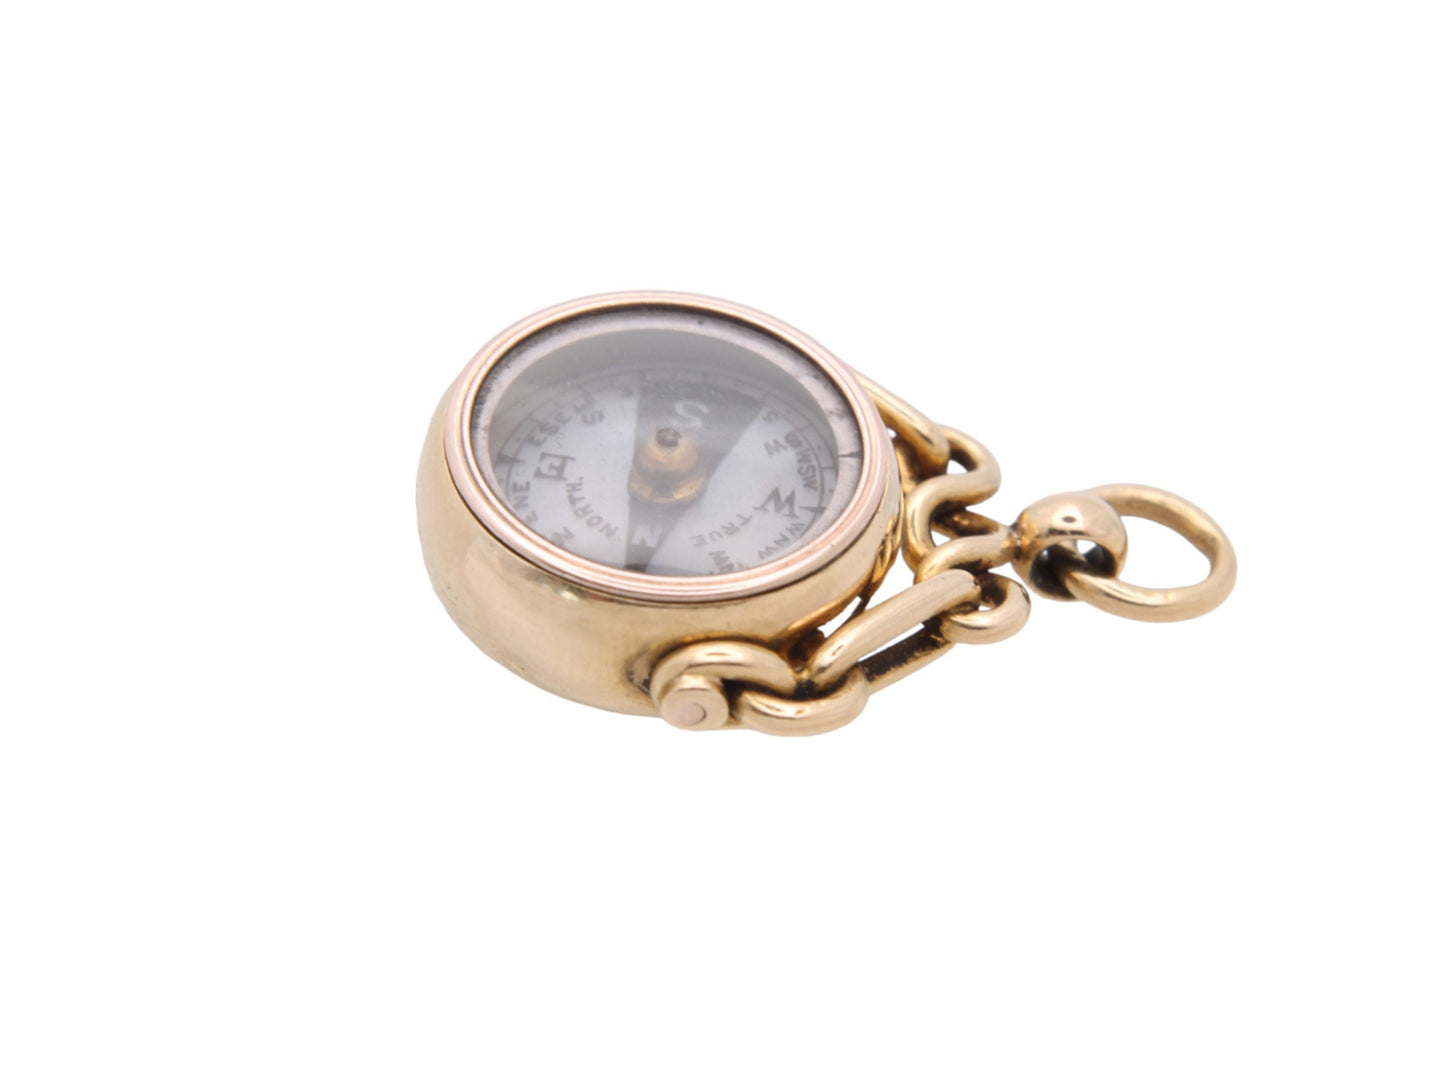 Antique-18ct-Gold-Carnelian-Compass-Pendant